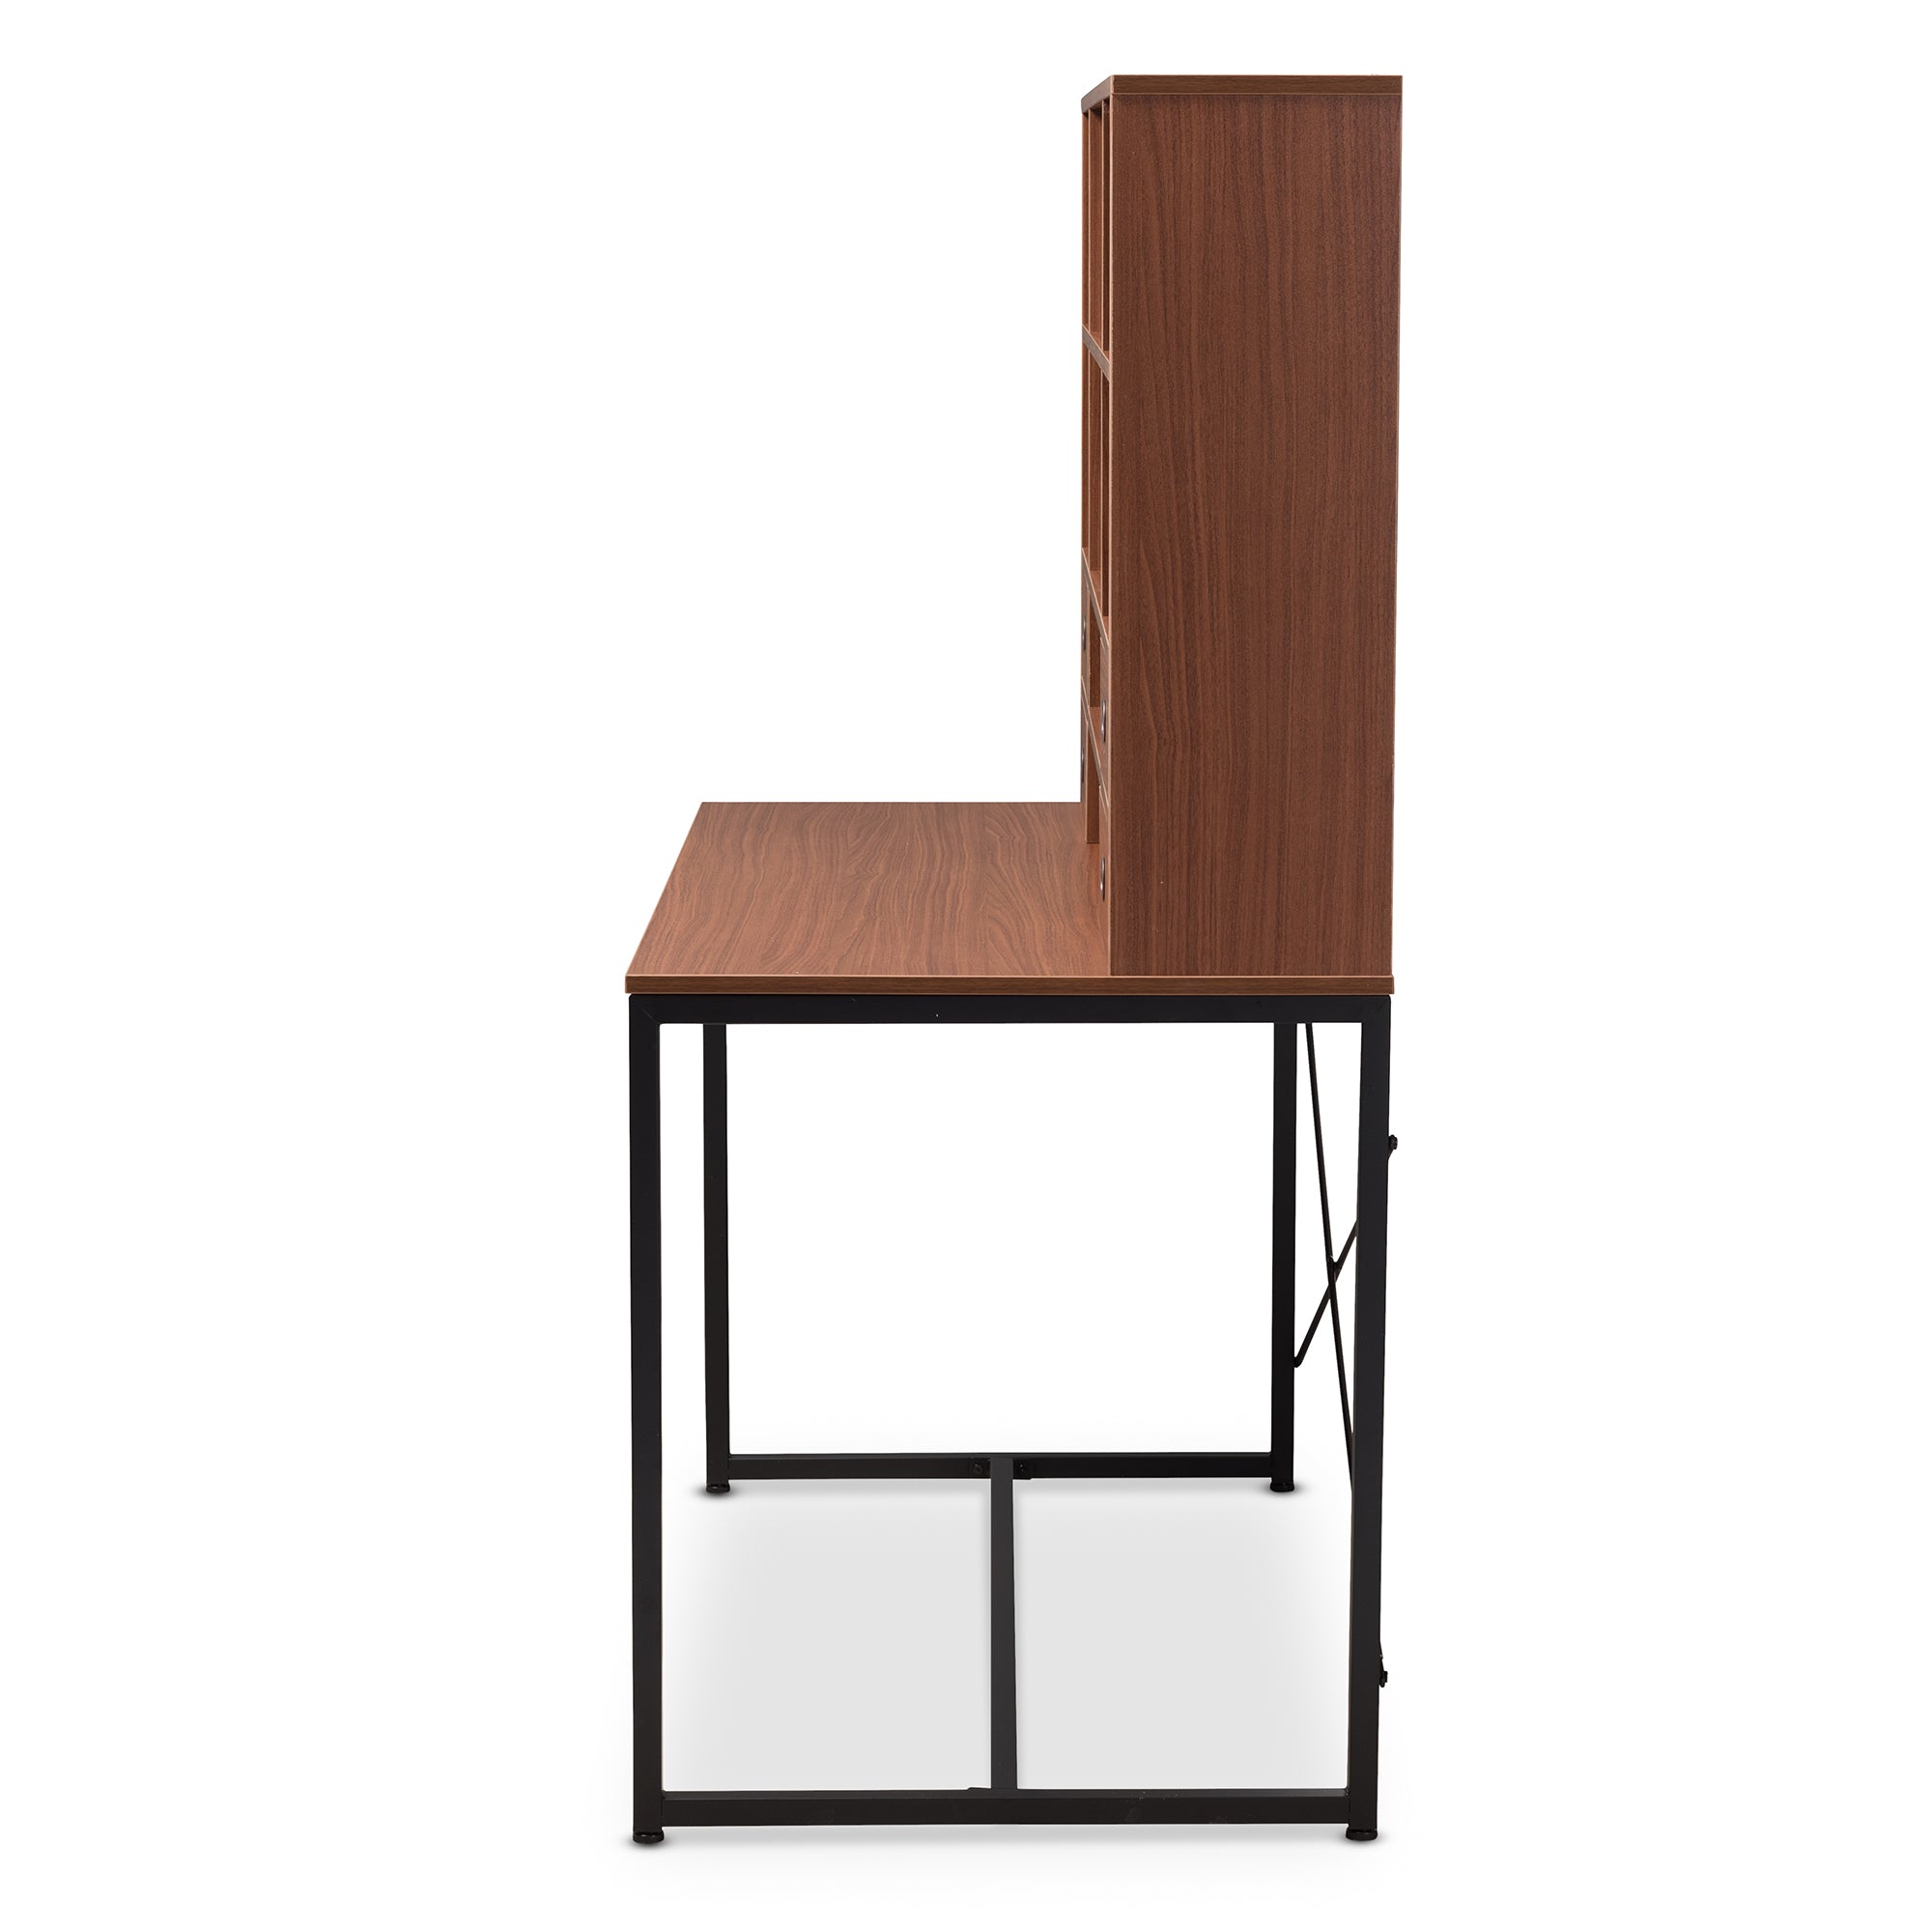 Edwin Industrial Desk 2-in-1-Desk-Baxton Studio - WI-Wall2Wall Furnishings